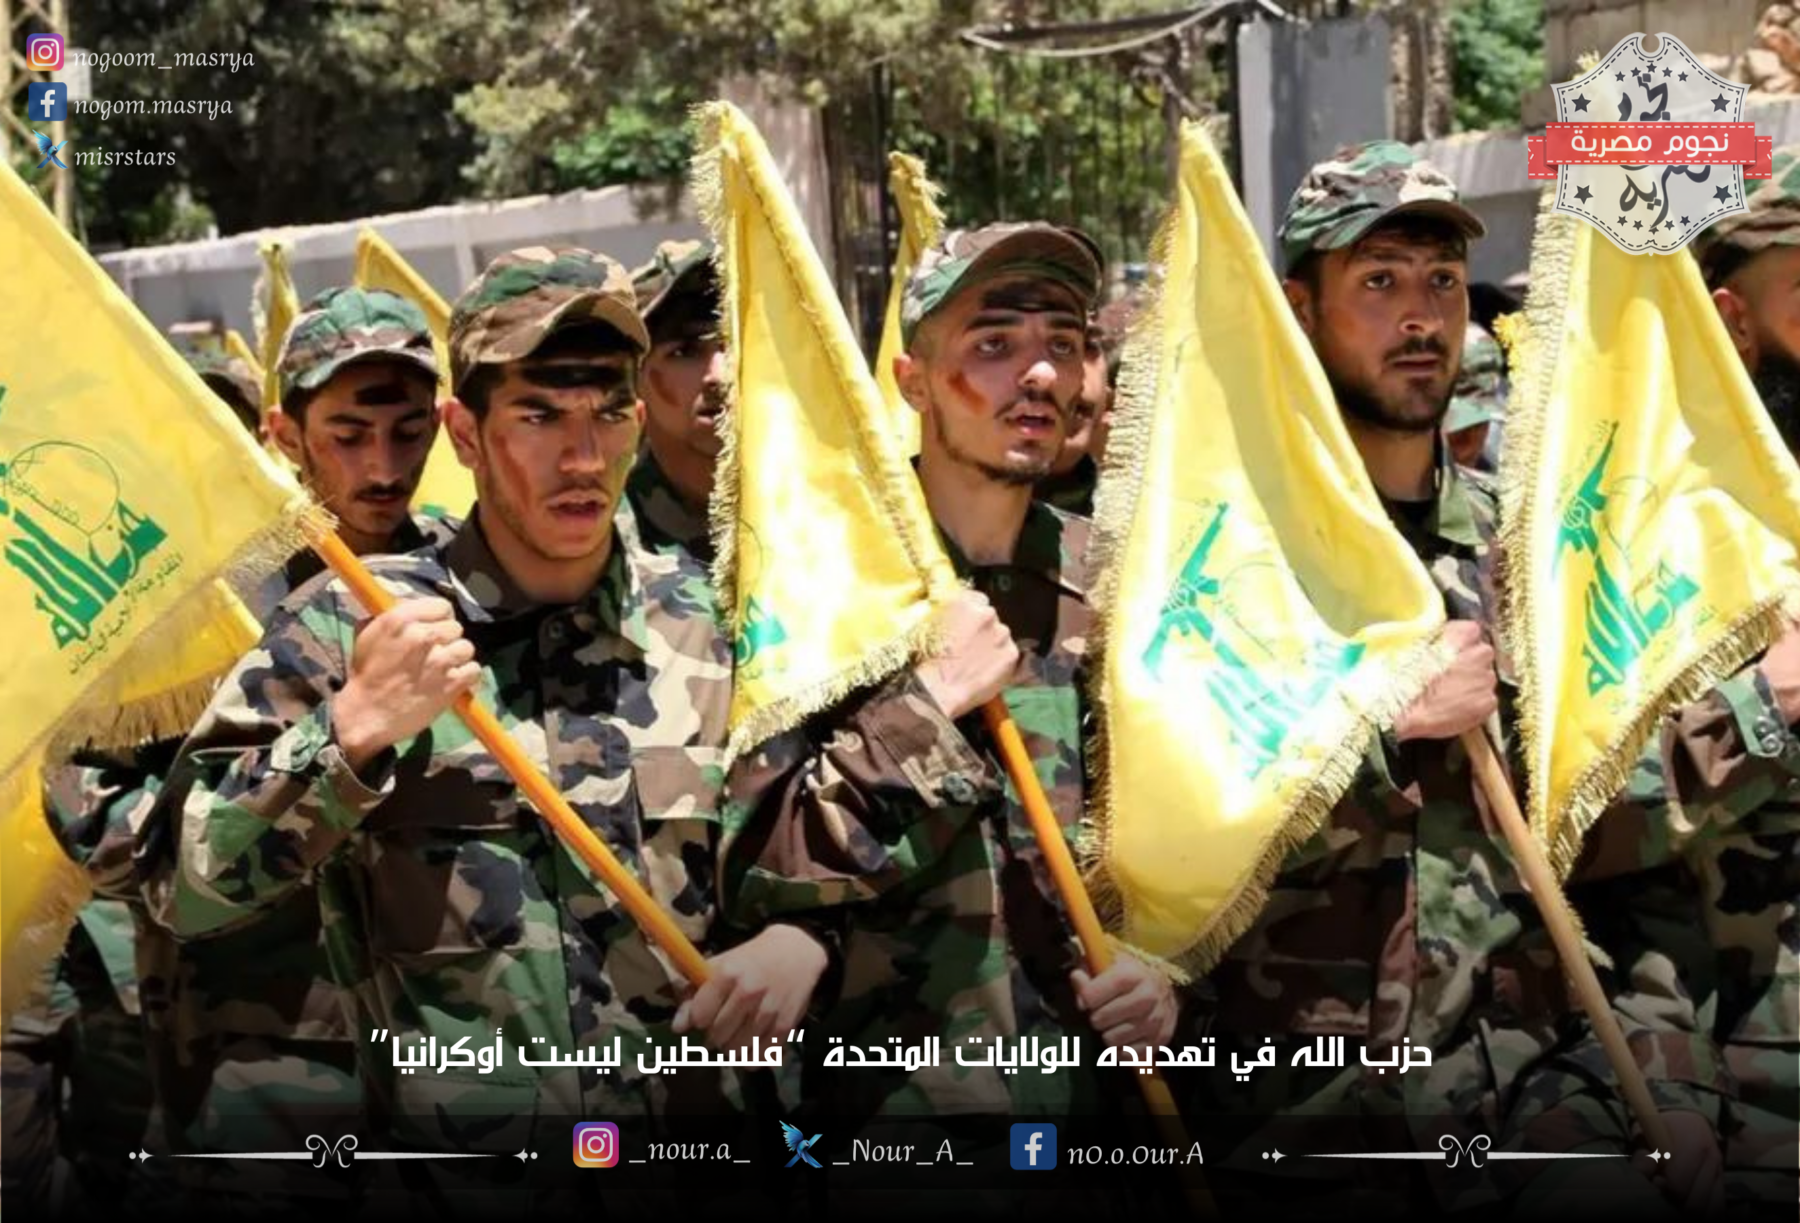 عناصر من حزب الله يحملون أعلامهم - مصدر الصورة: موقع العربية